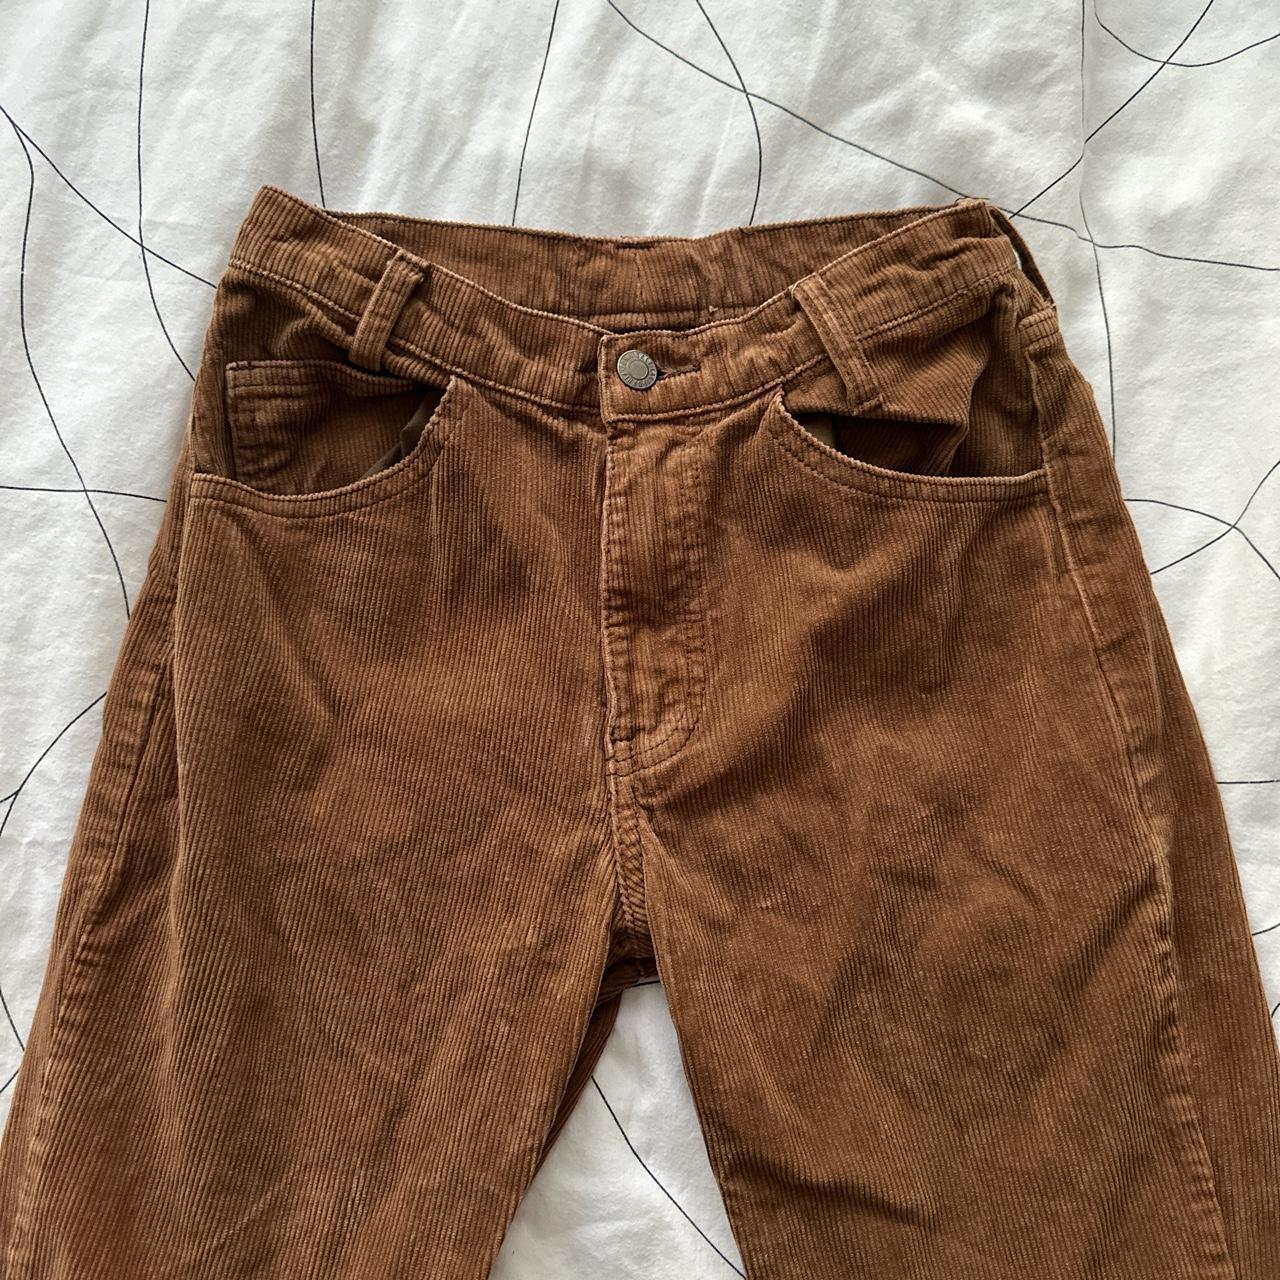 brown corduroy pants Brandy melville - Depop